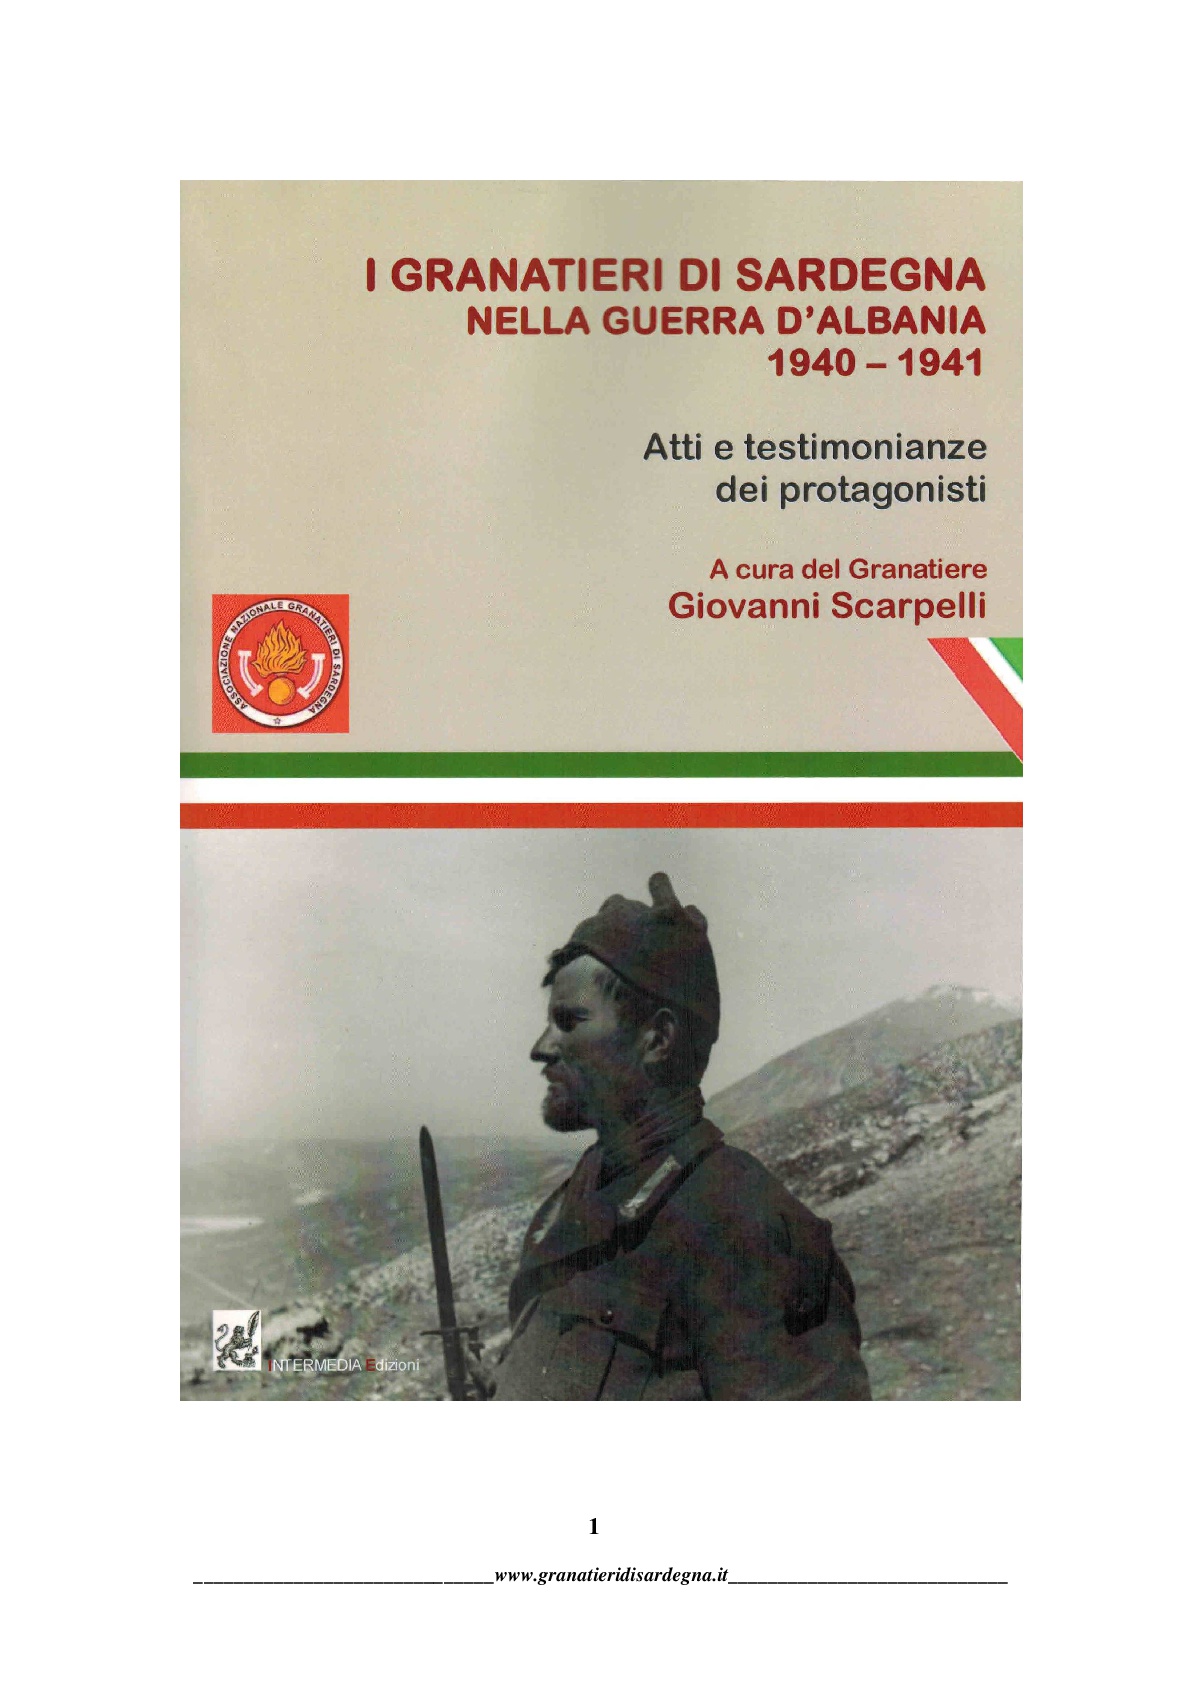  Granatieri di Sardegna nella guerra d'Albania 1940 - 1941